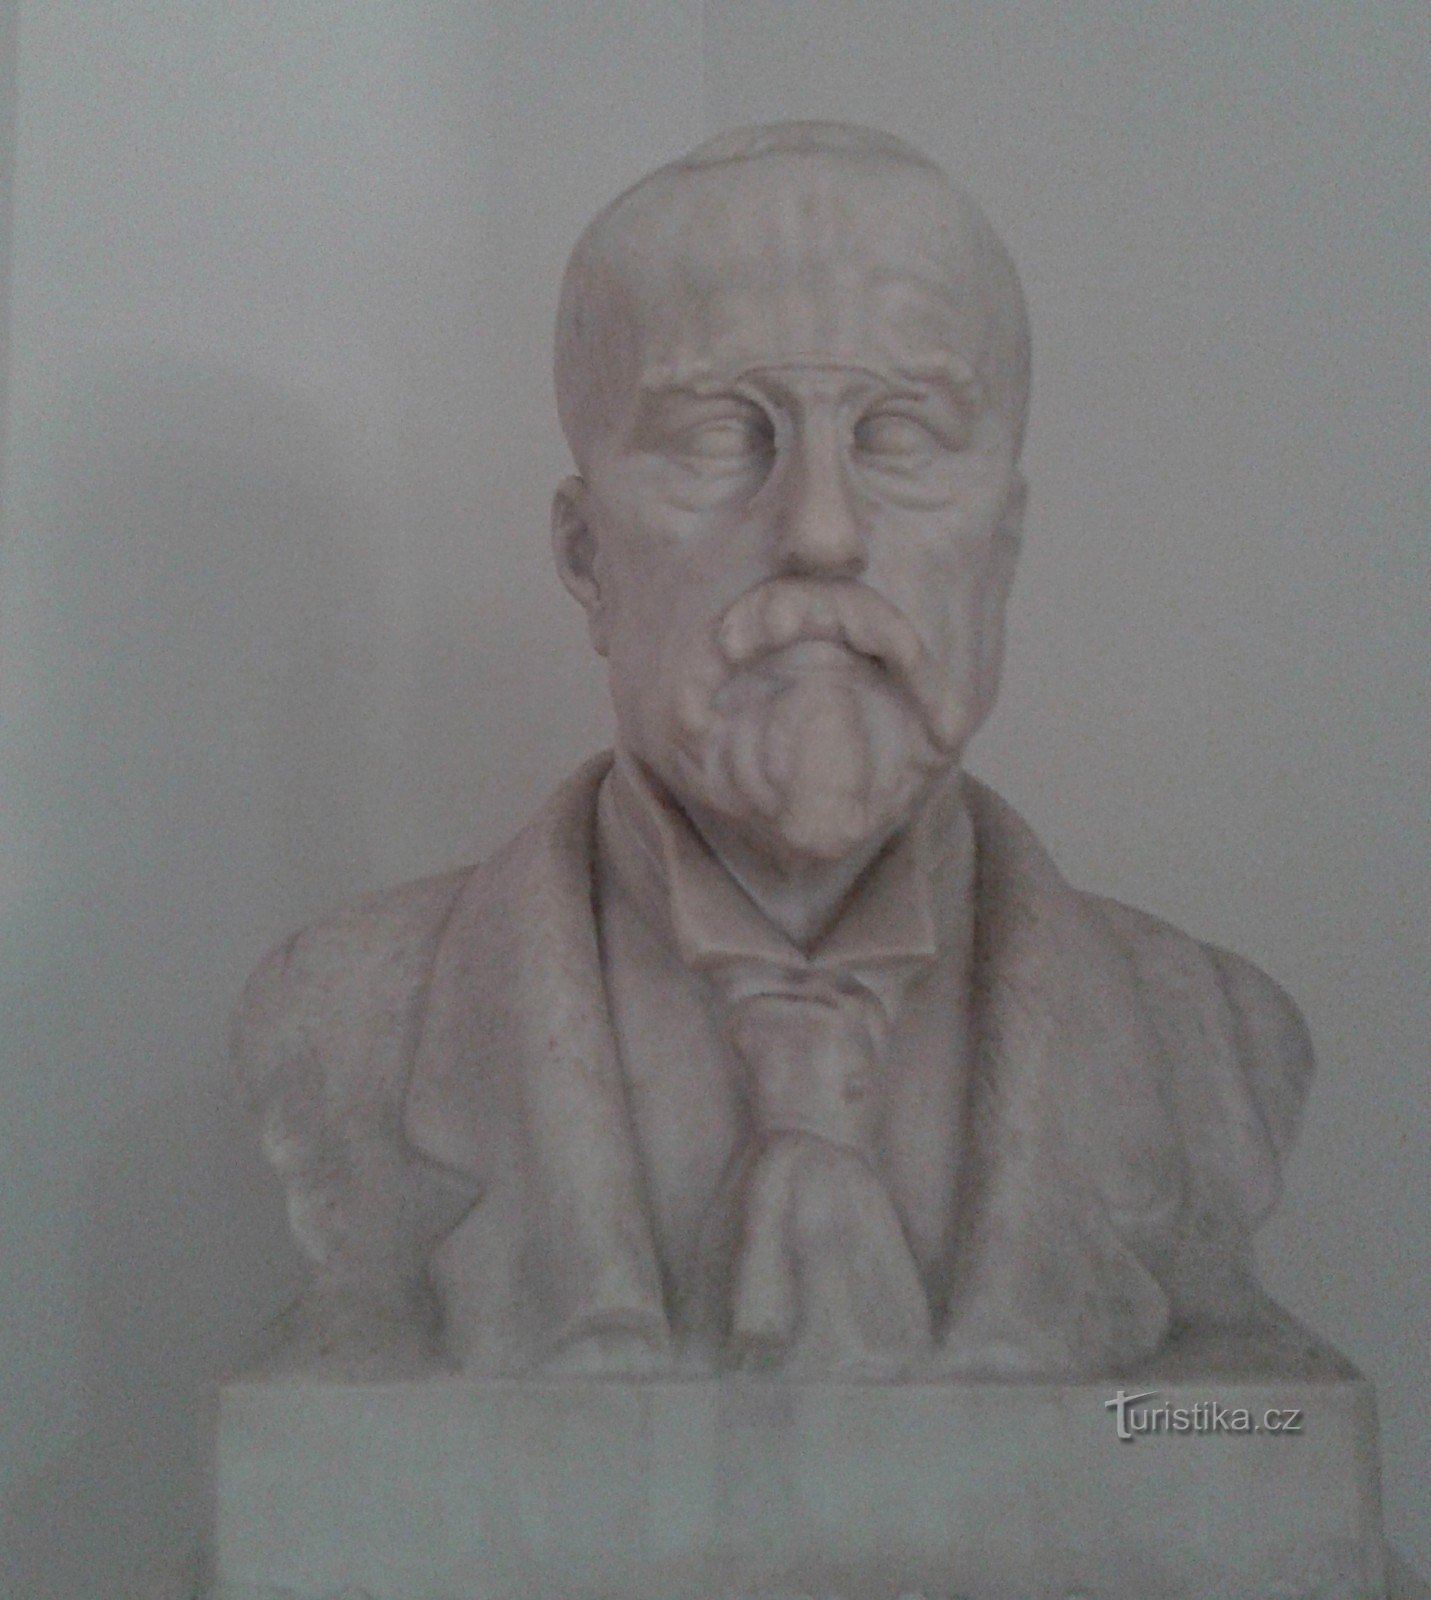 Busto da águia de Masaryk no hall de entrada